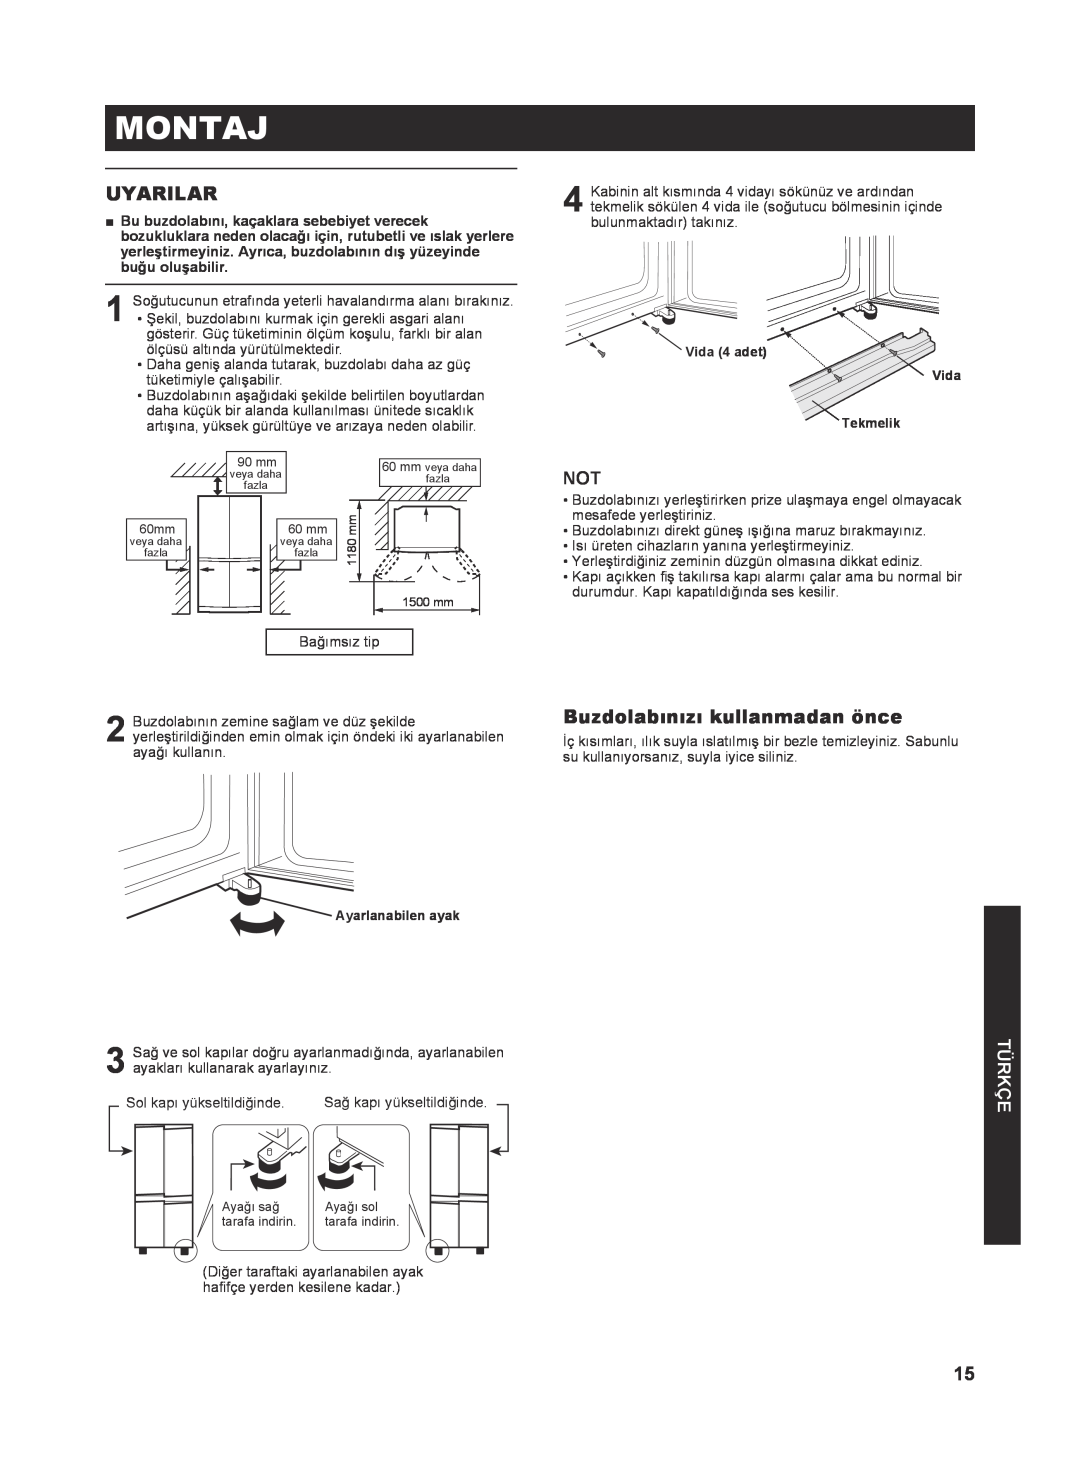 Sharp SJ-FP810V operation manual Montaj, Uyarilar, Buzdolabınızı kullanmadan önce, Türkçe 